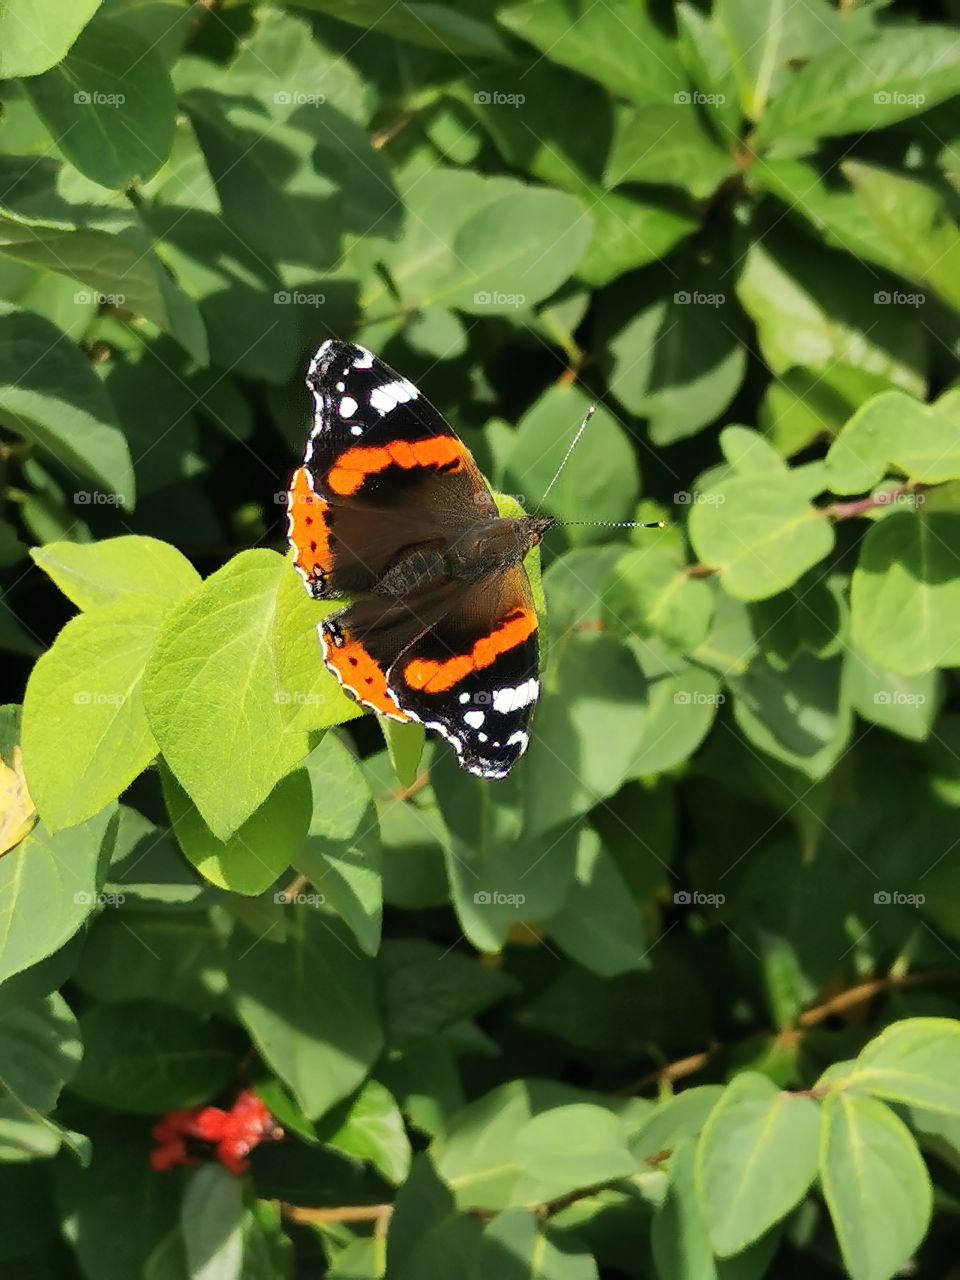 Admiral Schmetterling sonnt sich au
 Blättern